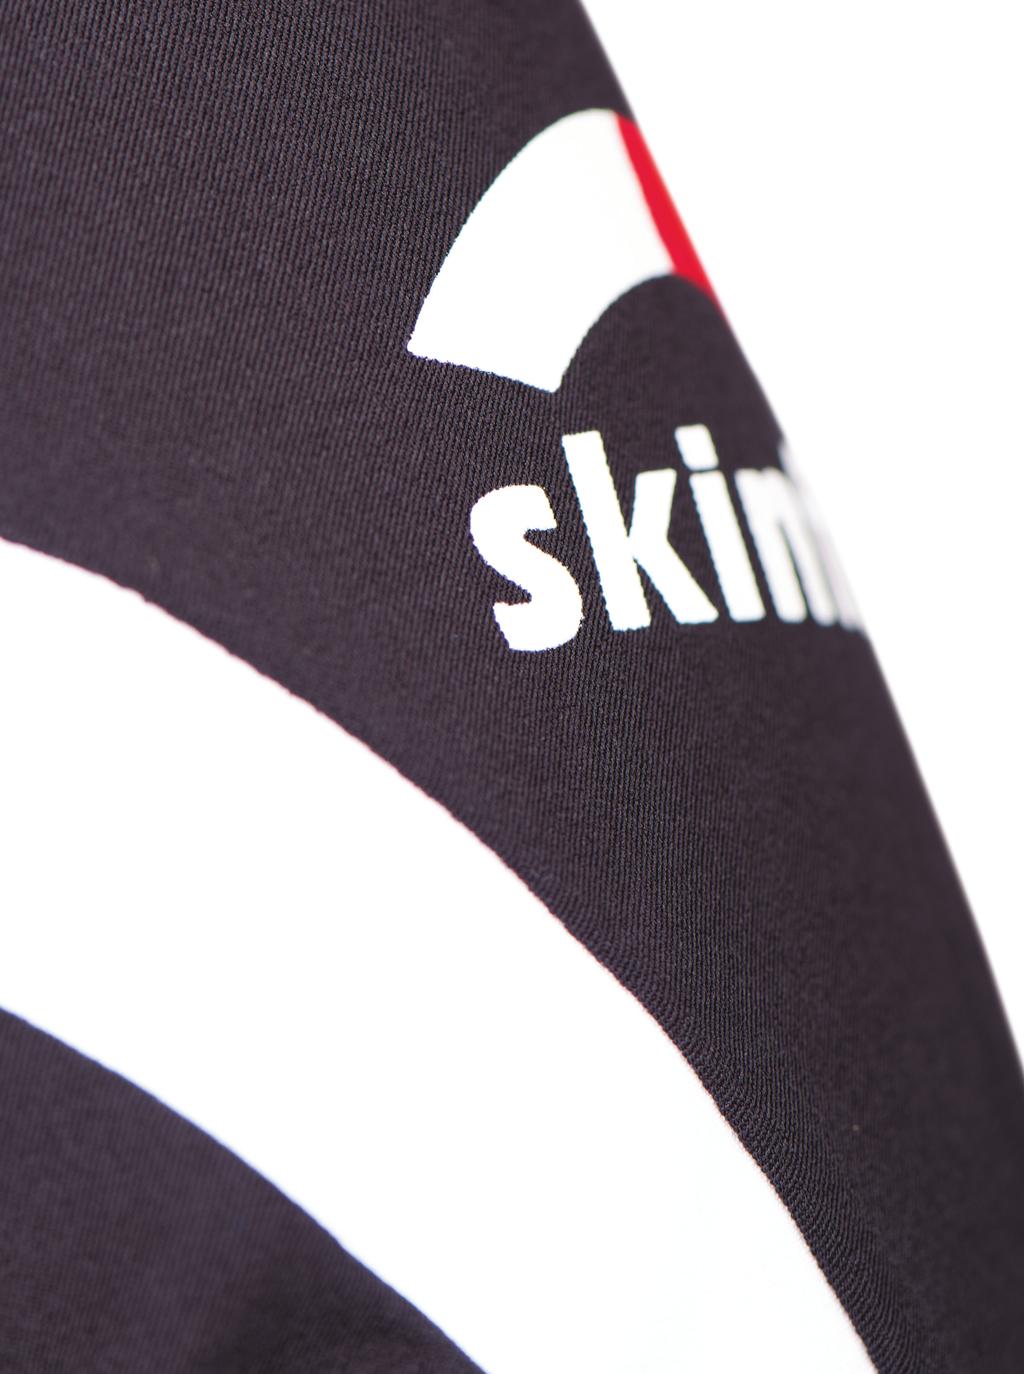 Skimo skinfit Ski Mountaineering El esquí de travesía de competición tiene una larga tradición en la zona de los Alpes.